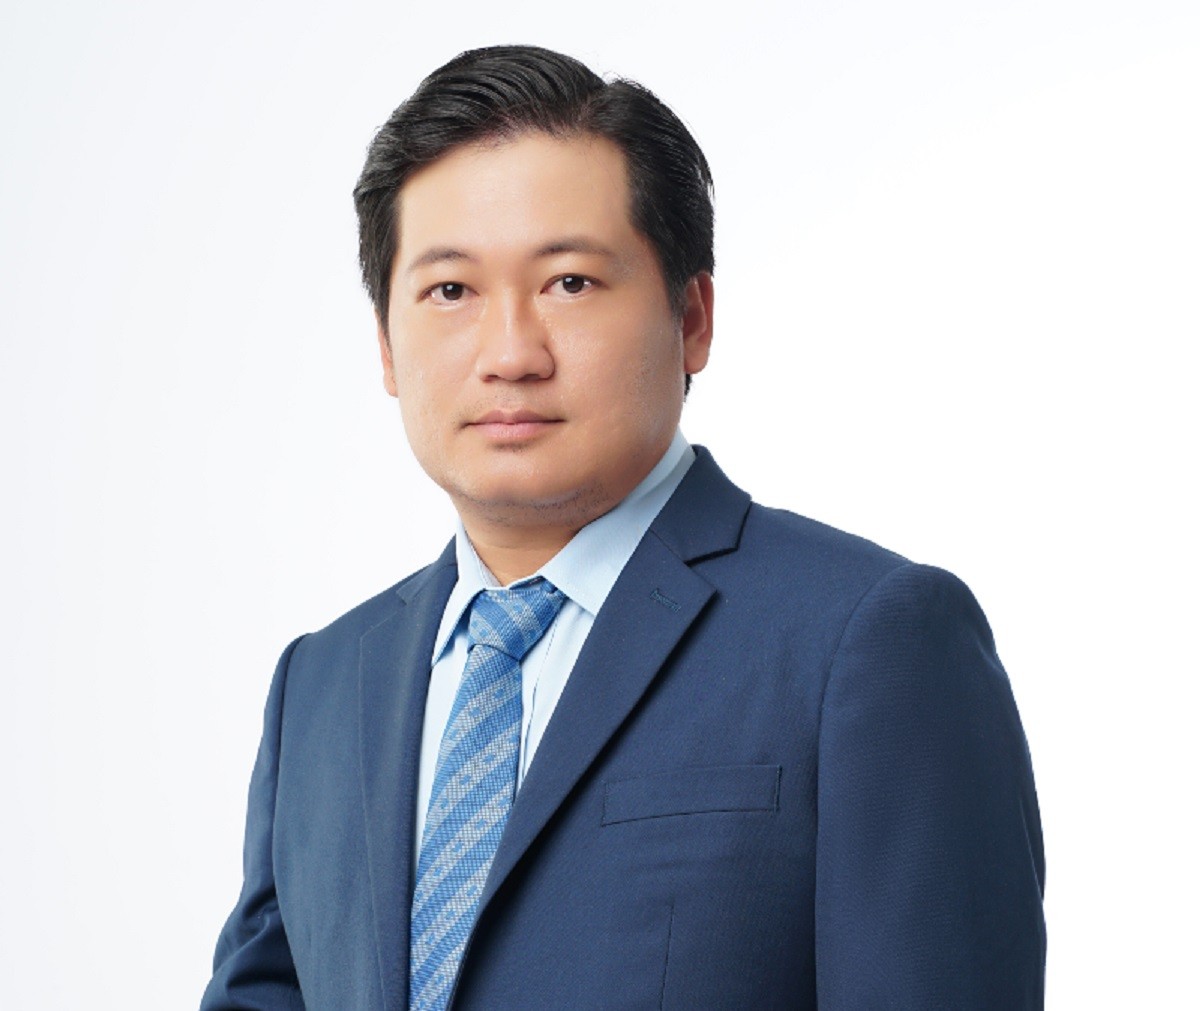 
Chân dung ông Dương Nhất Nguyên - Chủ tịch Hội đồng quản trị của Ngân hàng Việt Nam Thương Tín (VietBank)
